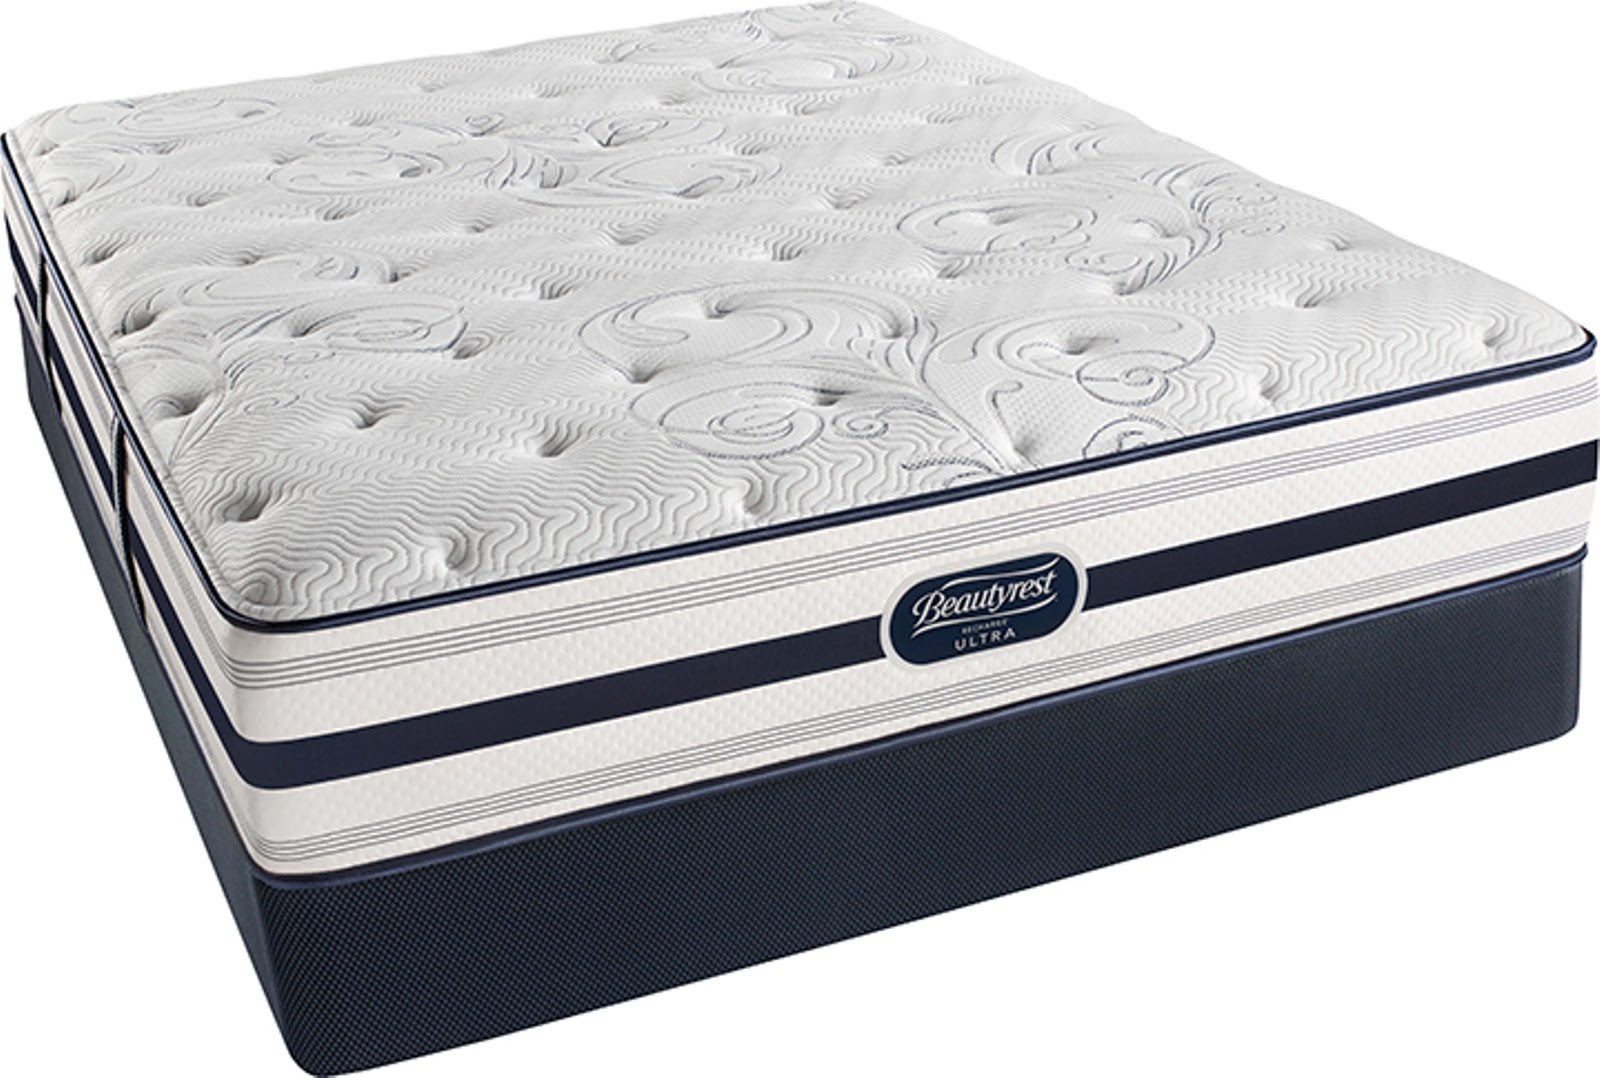 simmons beautyrest queen mattress amazon